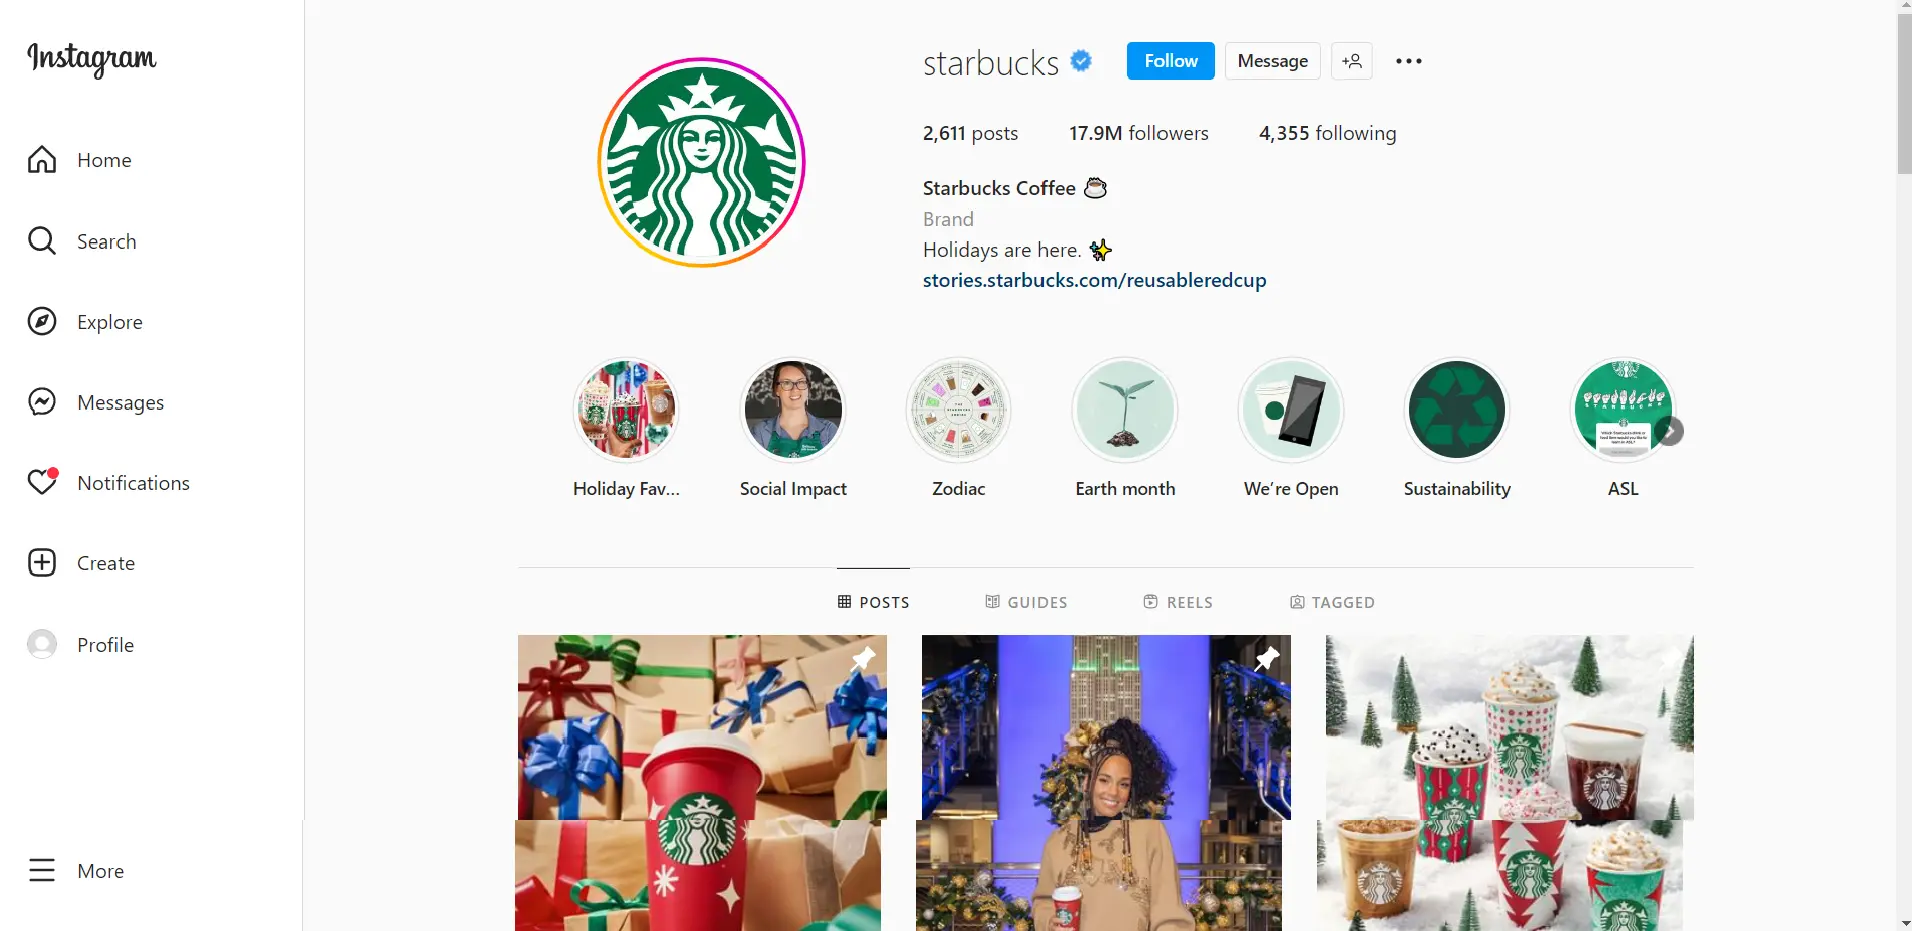 Starbucks Instagram Page